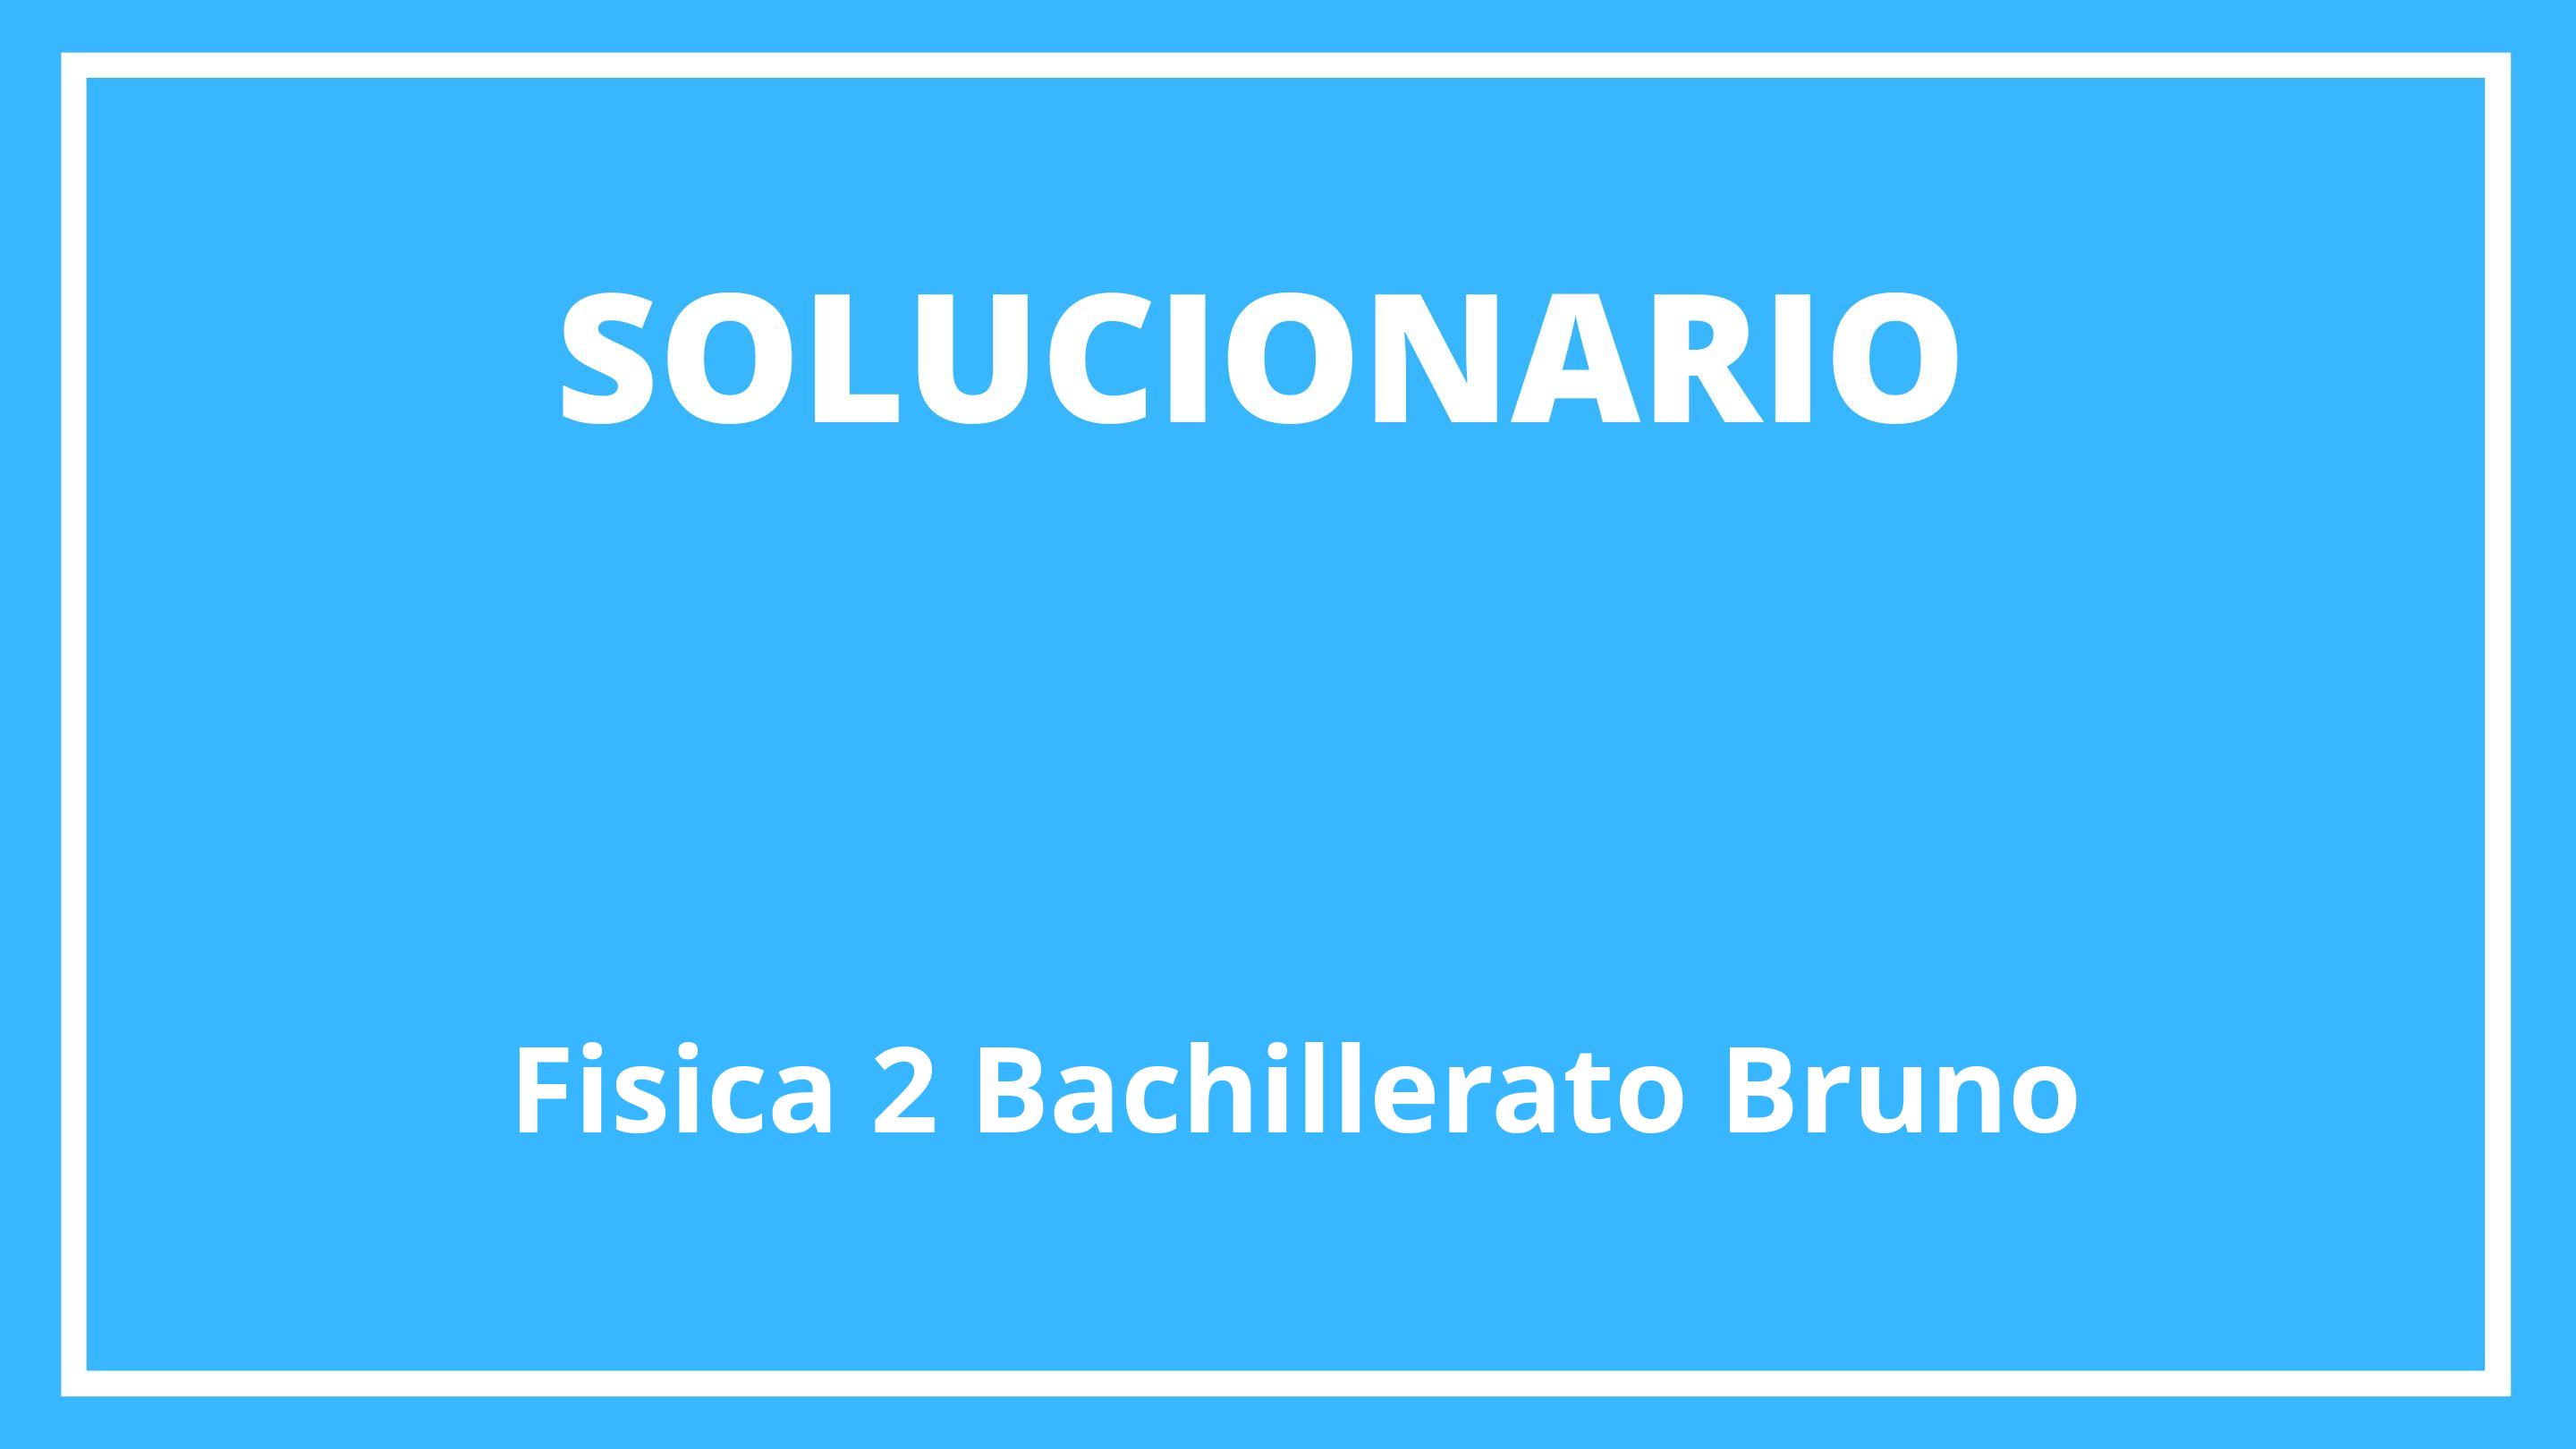 Solucionario Fisica 2 Bachillerato Bruño